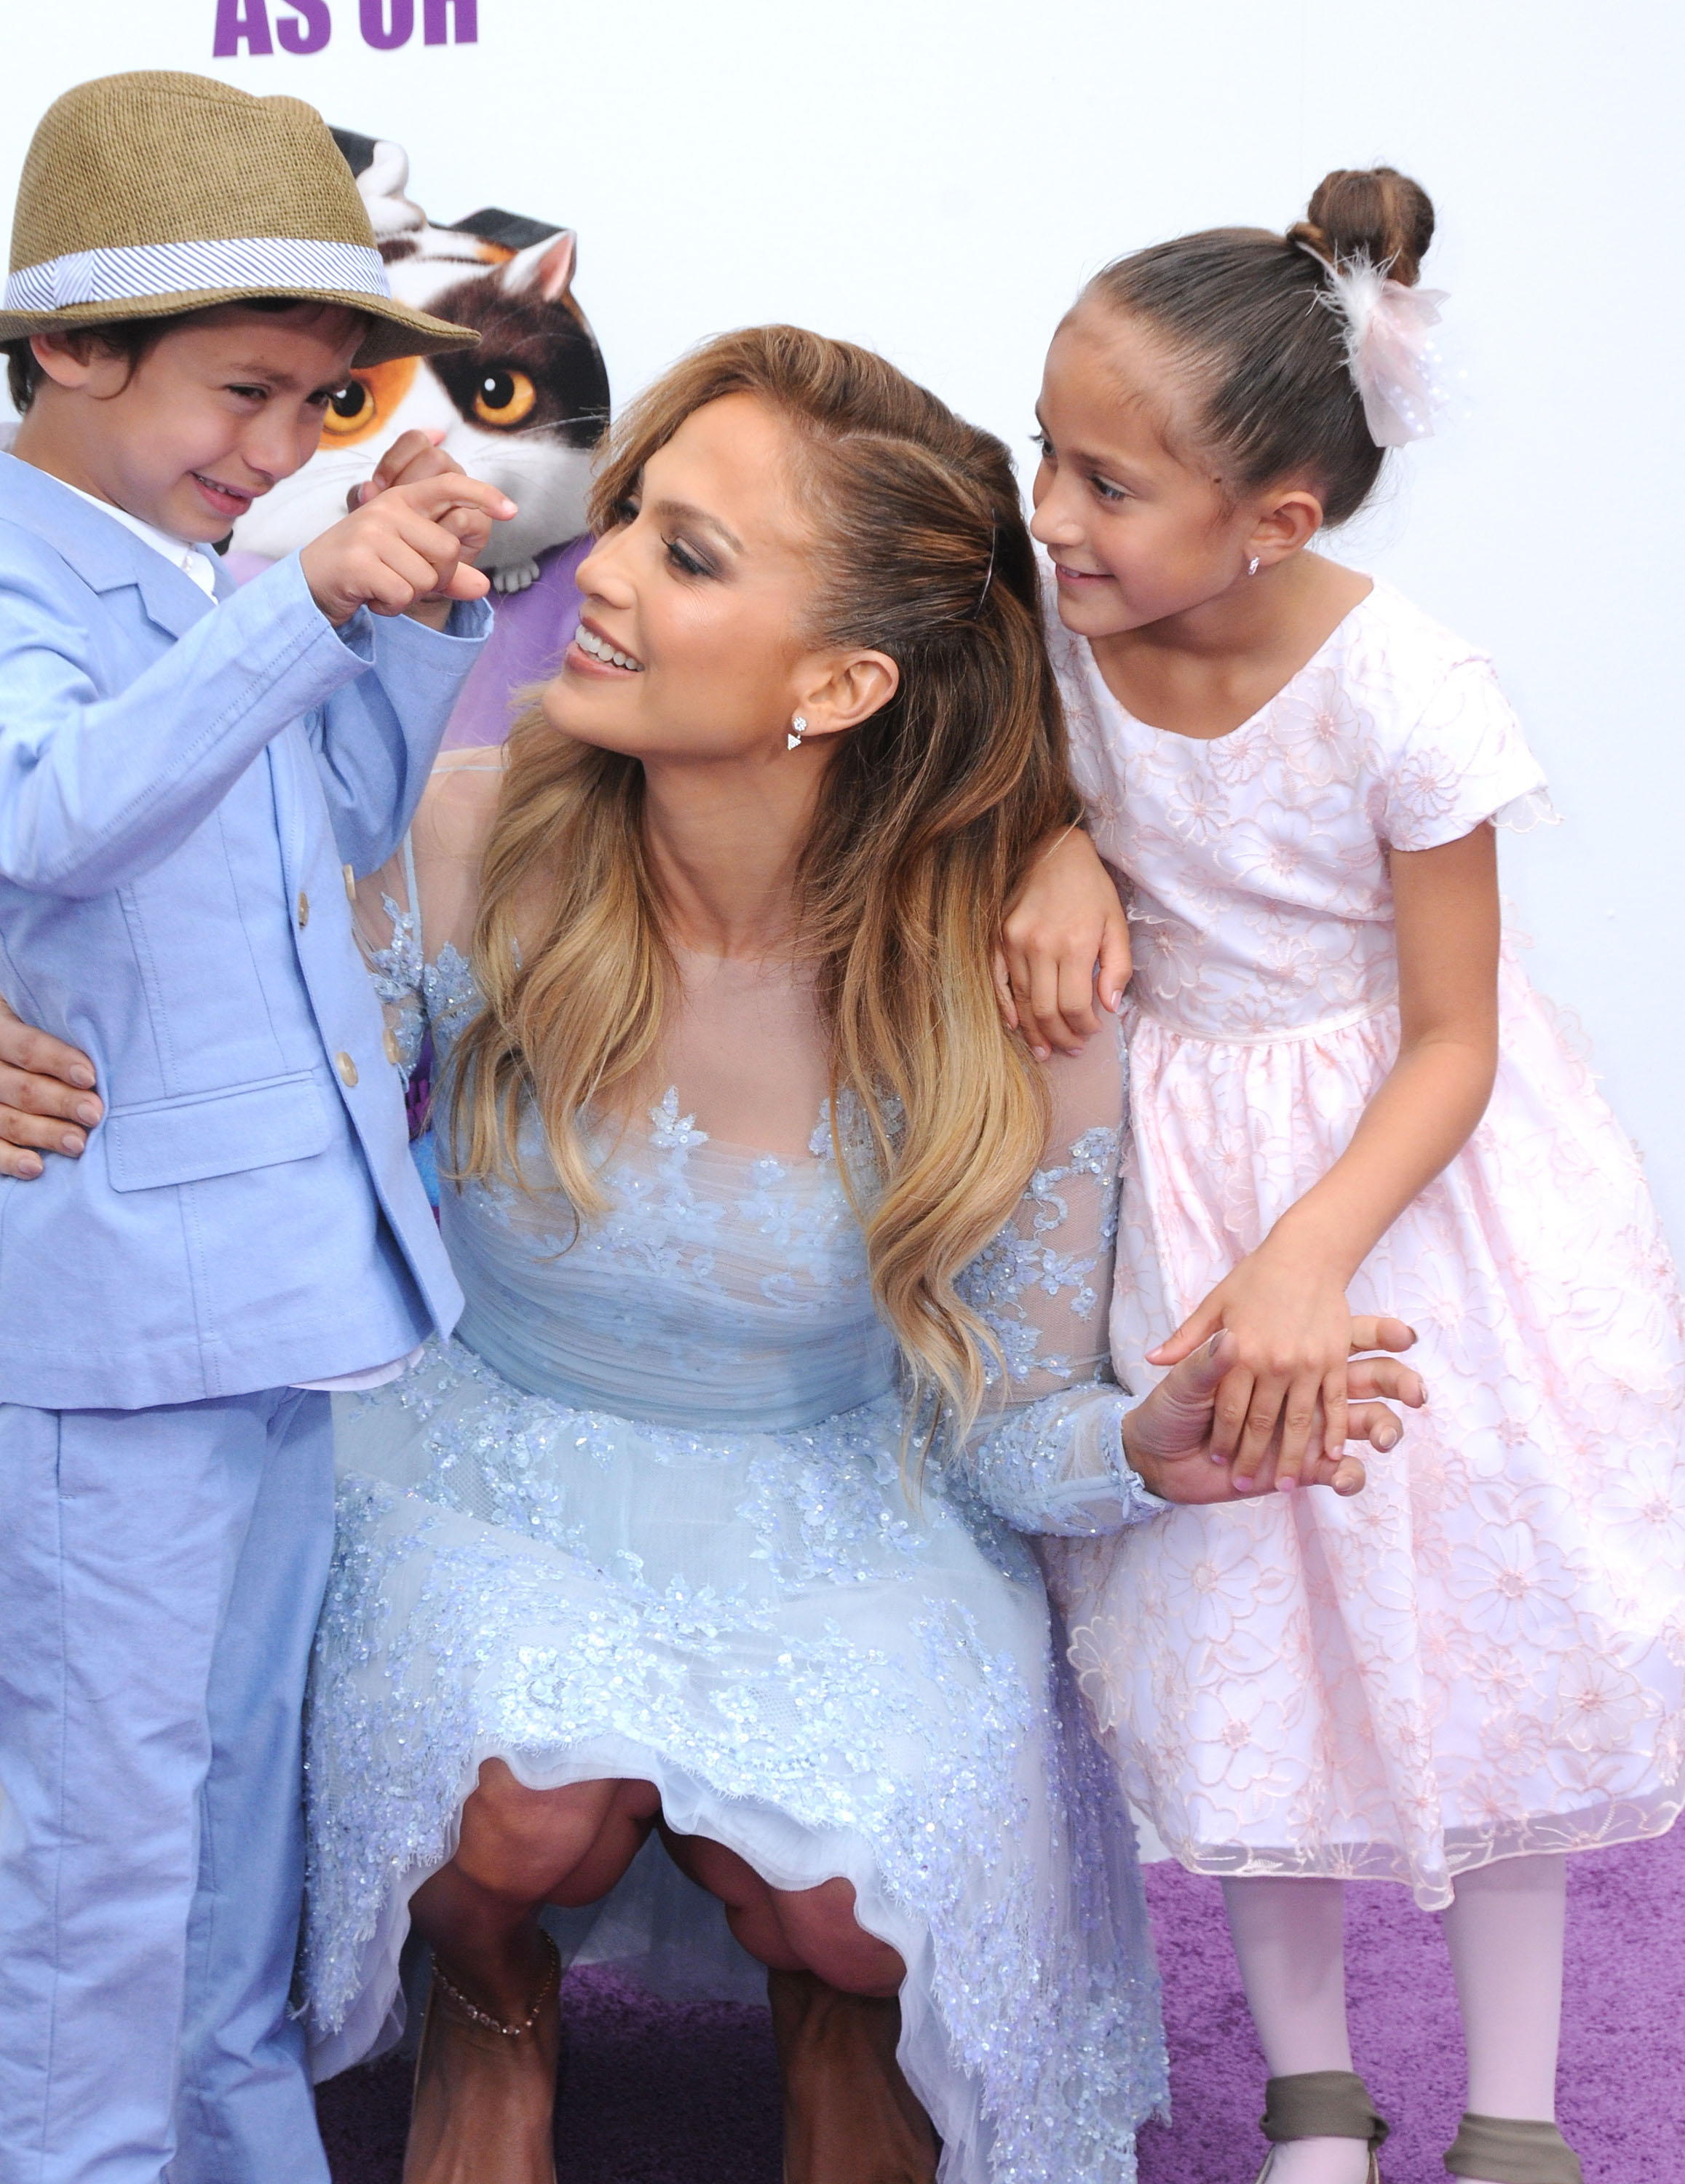 Max Muniz, Jennifer Lopez et Emme Muniz à la première de "Home", 2015 | Source : Getty Images